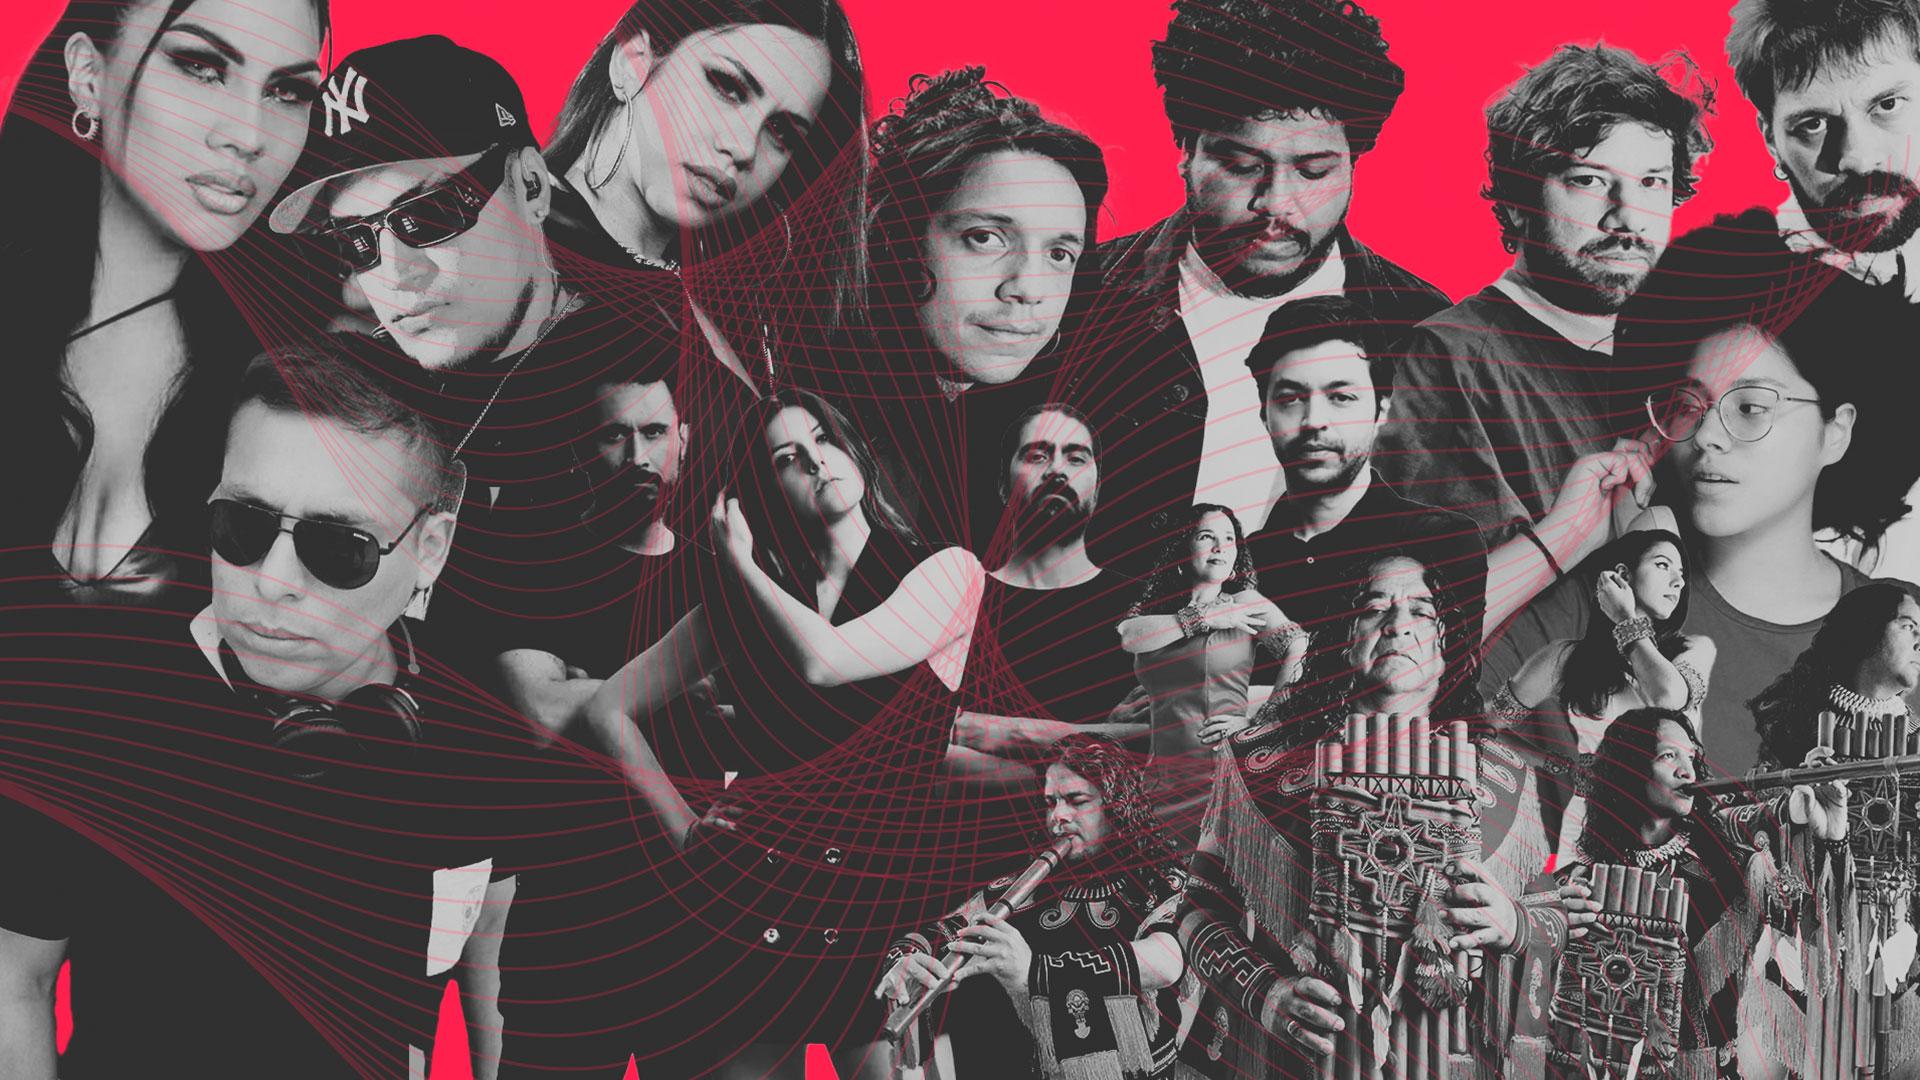 Tribilin Sound, Asmir Young, WAN y otros artistas peruanos con nueva música en un collage con fondo rojo